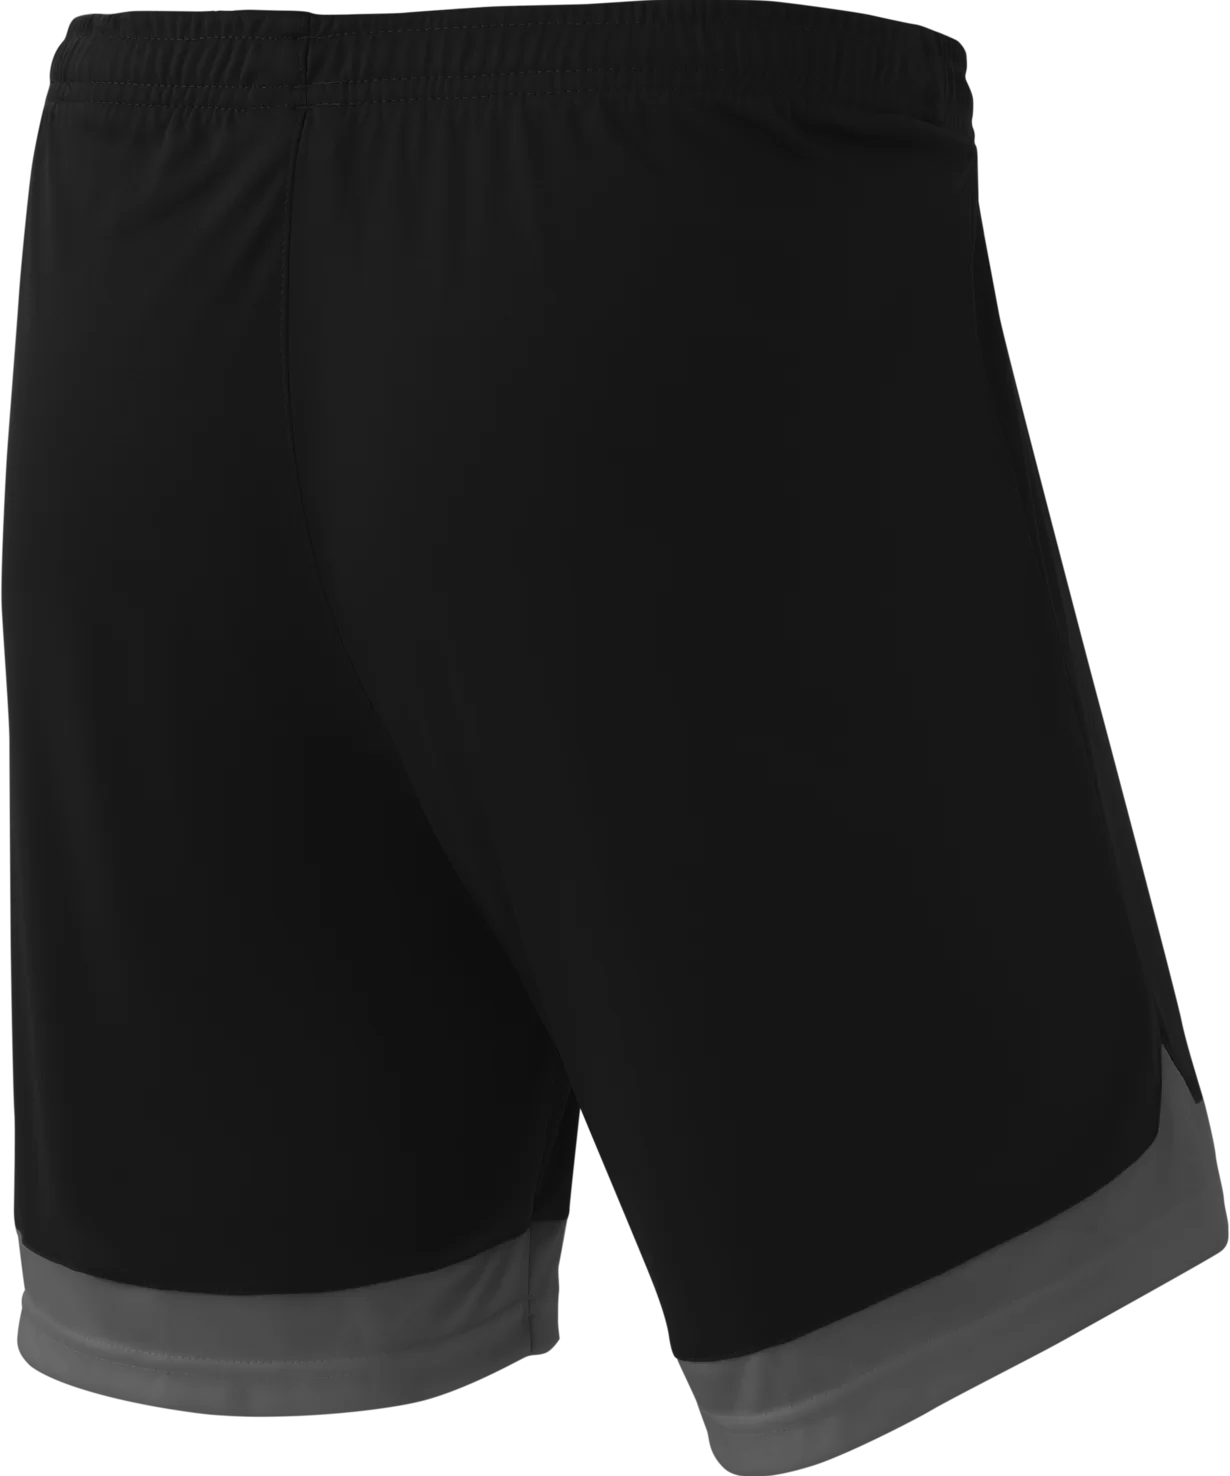 Реальное фото Шорты игровые DIVISION PerFormDRY Union Shorts, черный/темно-серый/белый от магазина СпортСЕ